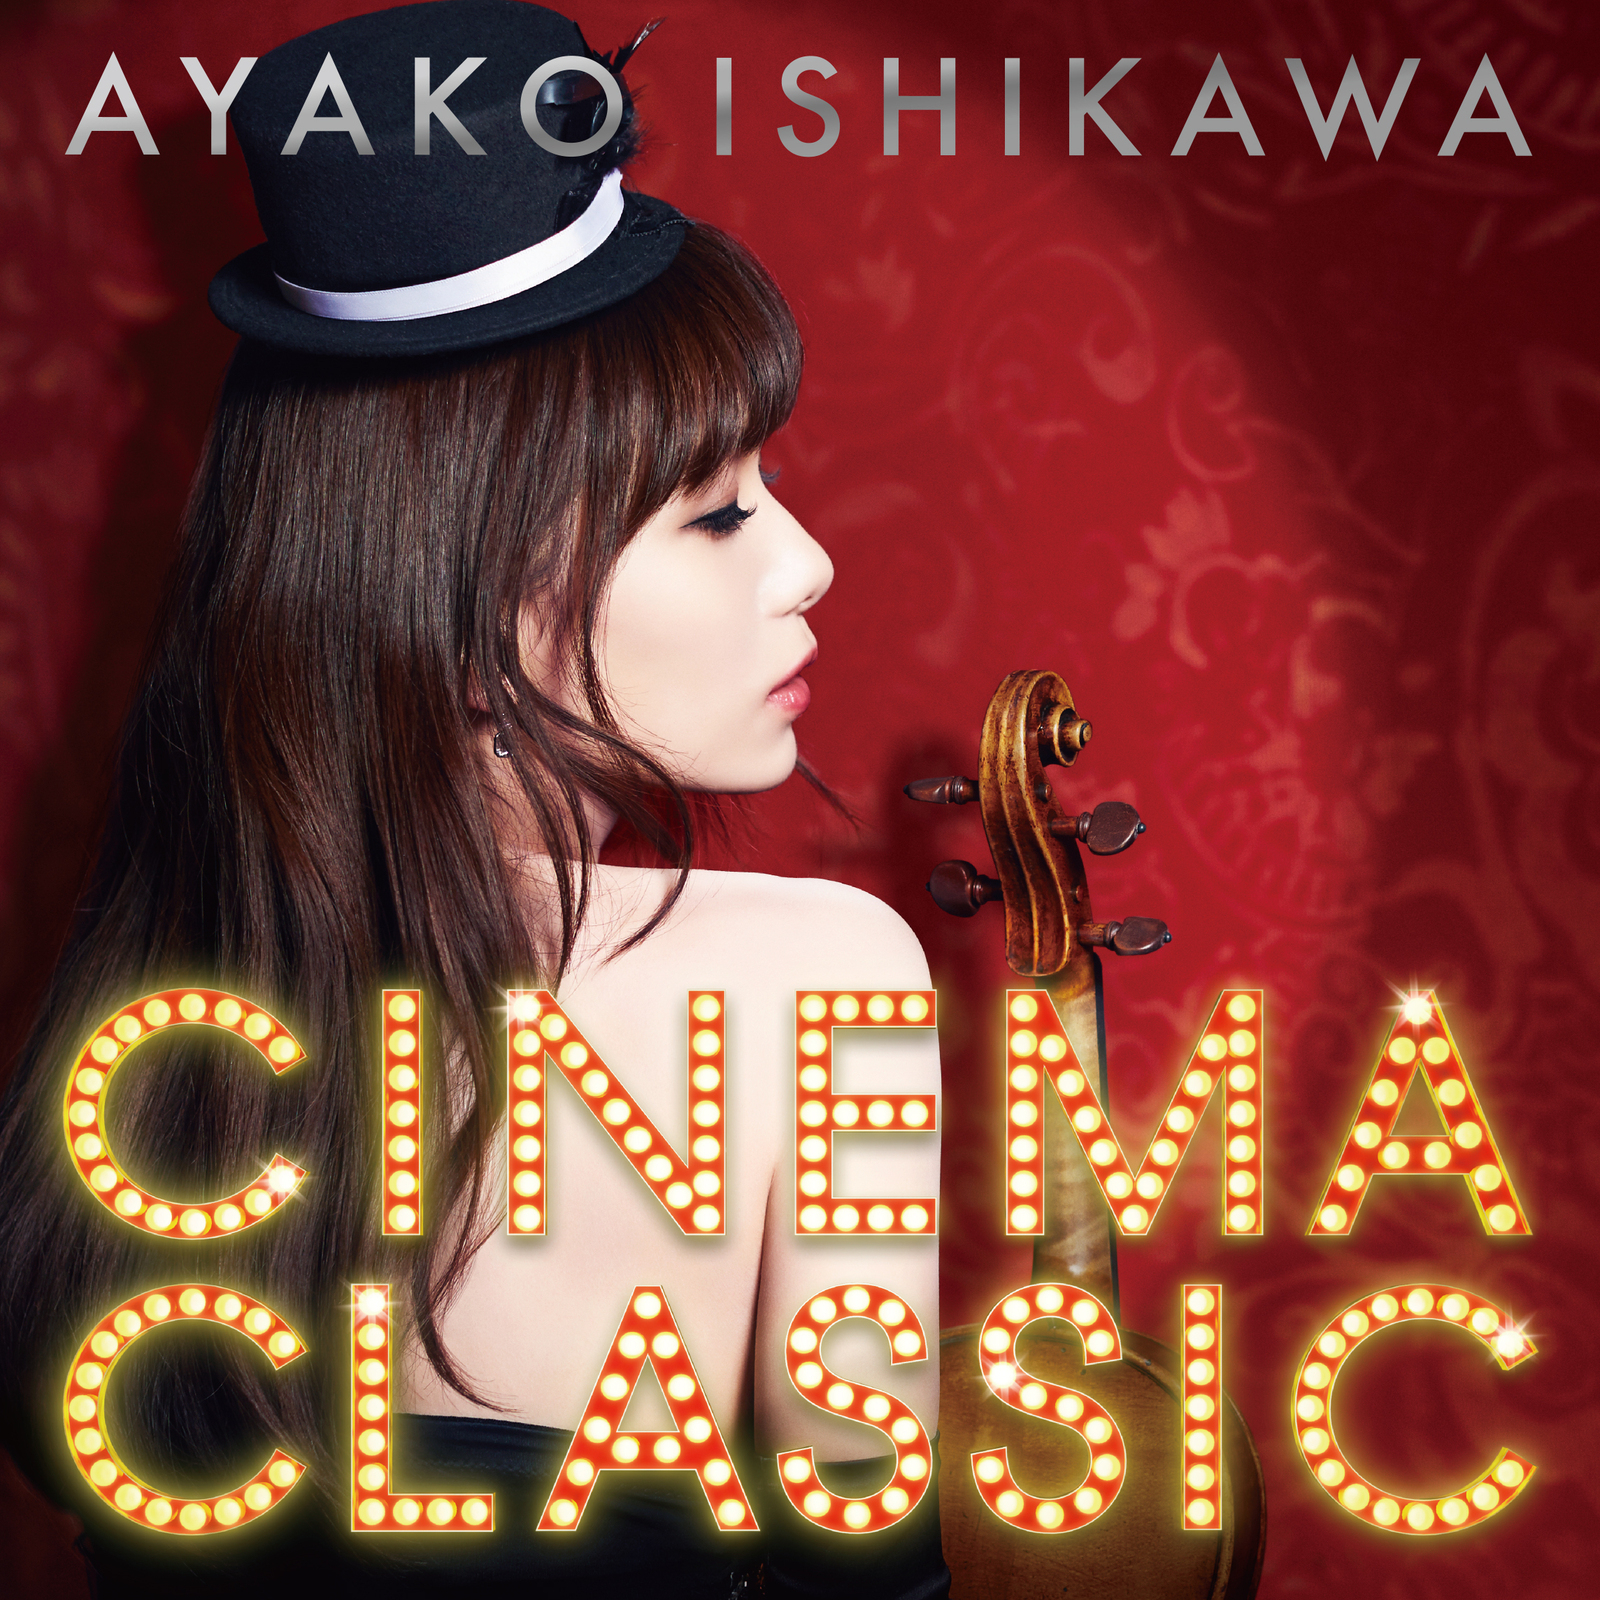 石川綾子 (いしかわあやこ) アルバム『CINEMA CLASSIC』(2015年) 高画質ジャケット画像